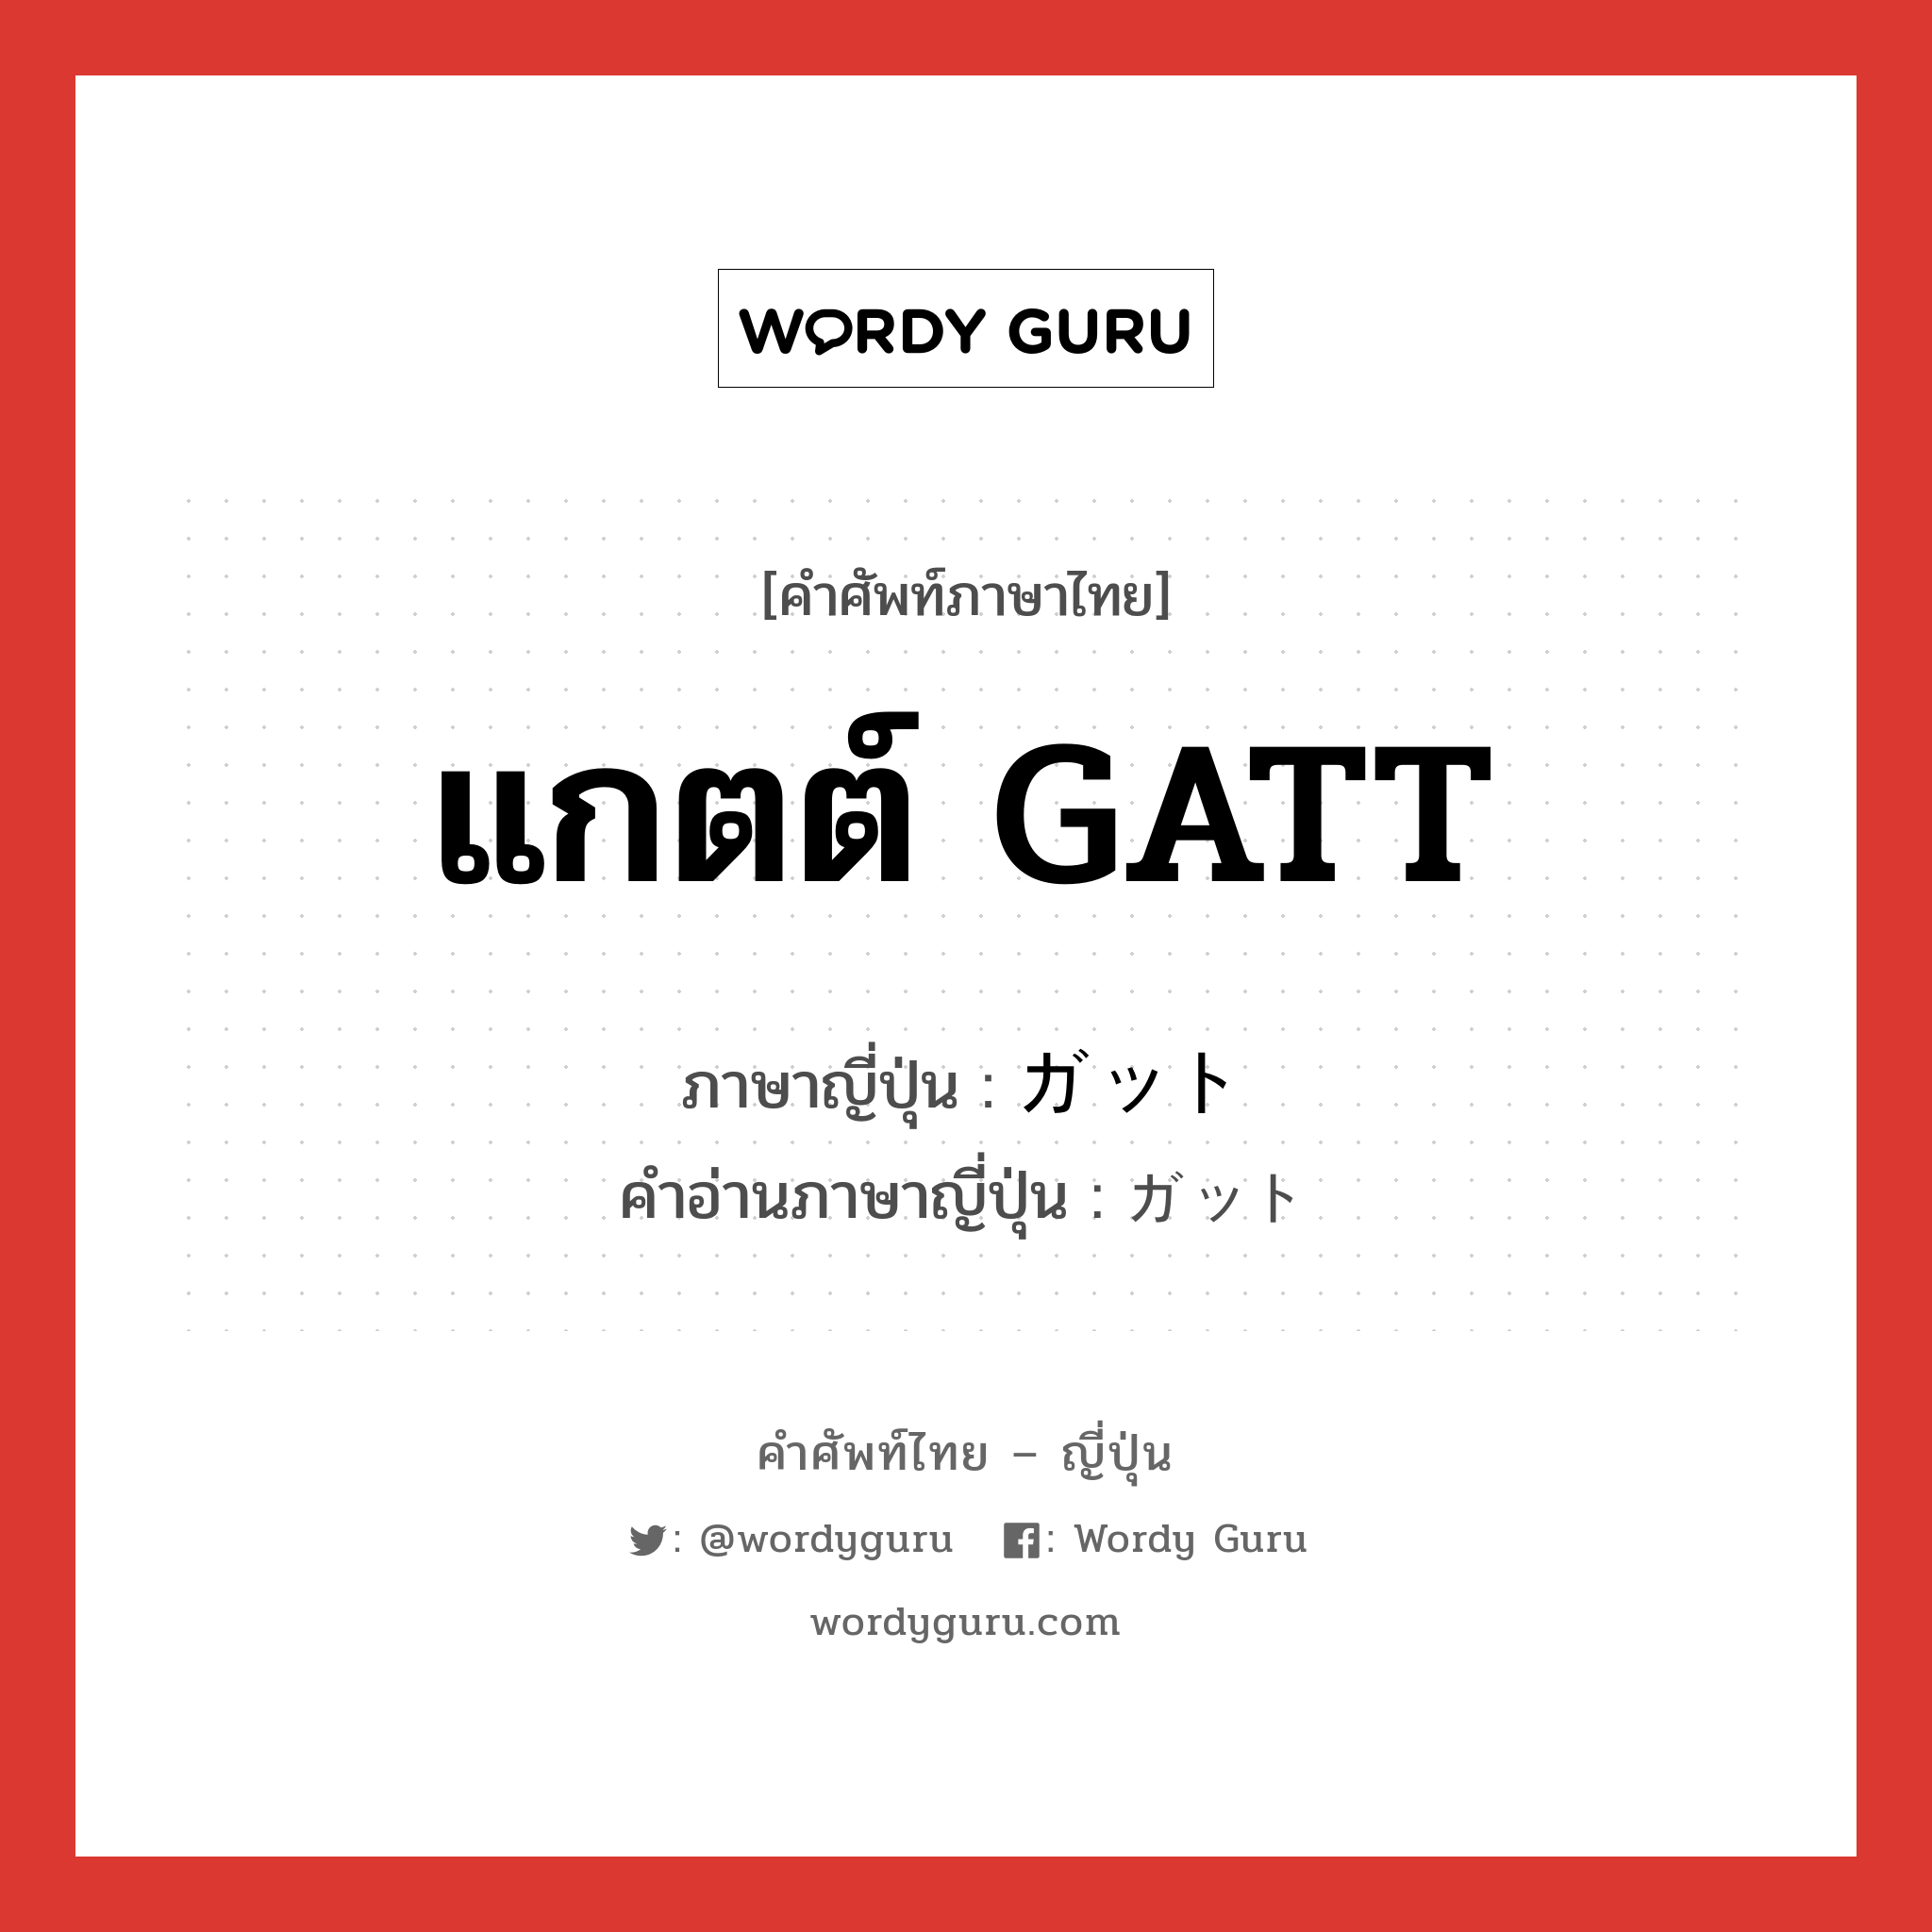 แกตต์ GATT ภาษาญี่ปุ่นคืออะไร, คำศัพท์ภาษาไทย - ญี่ปุ่น แกตต์ GATT ภาษาญี่ปุ่น ガット คำอ่านภาษาญี่ปุ่น ガット หมวด n หมวด n